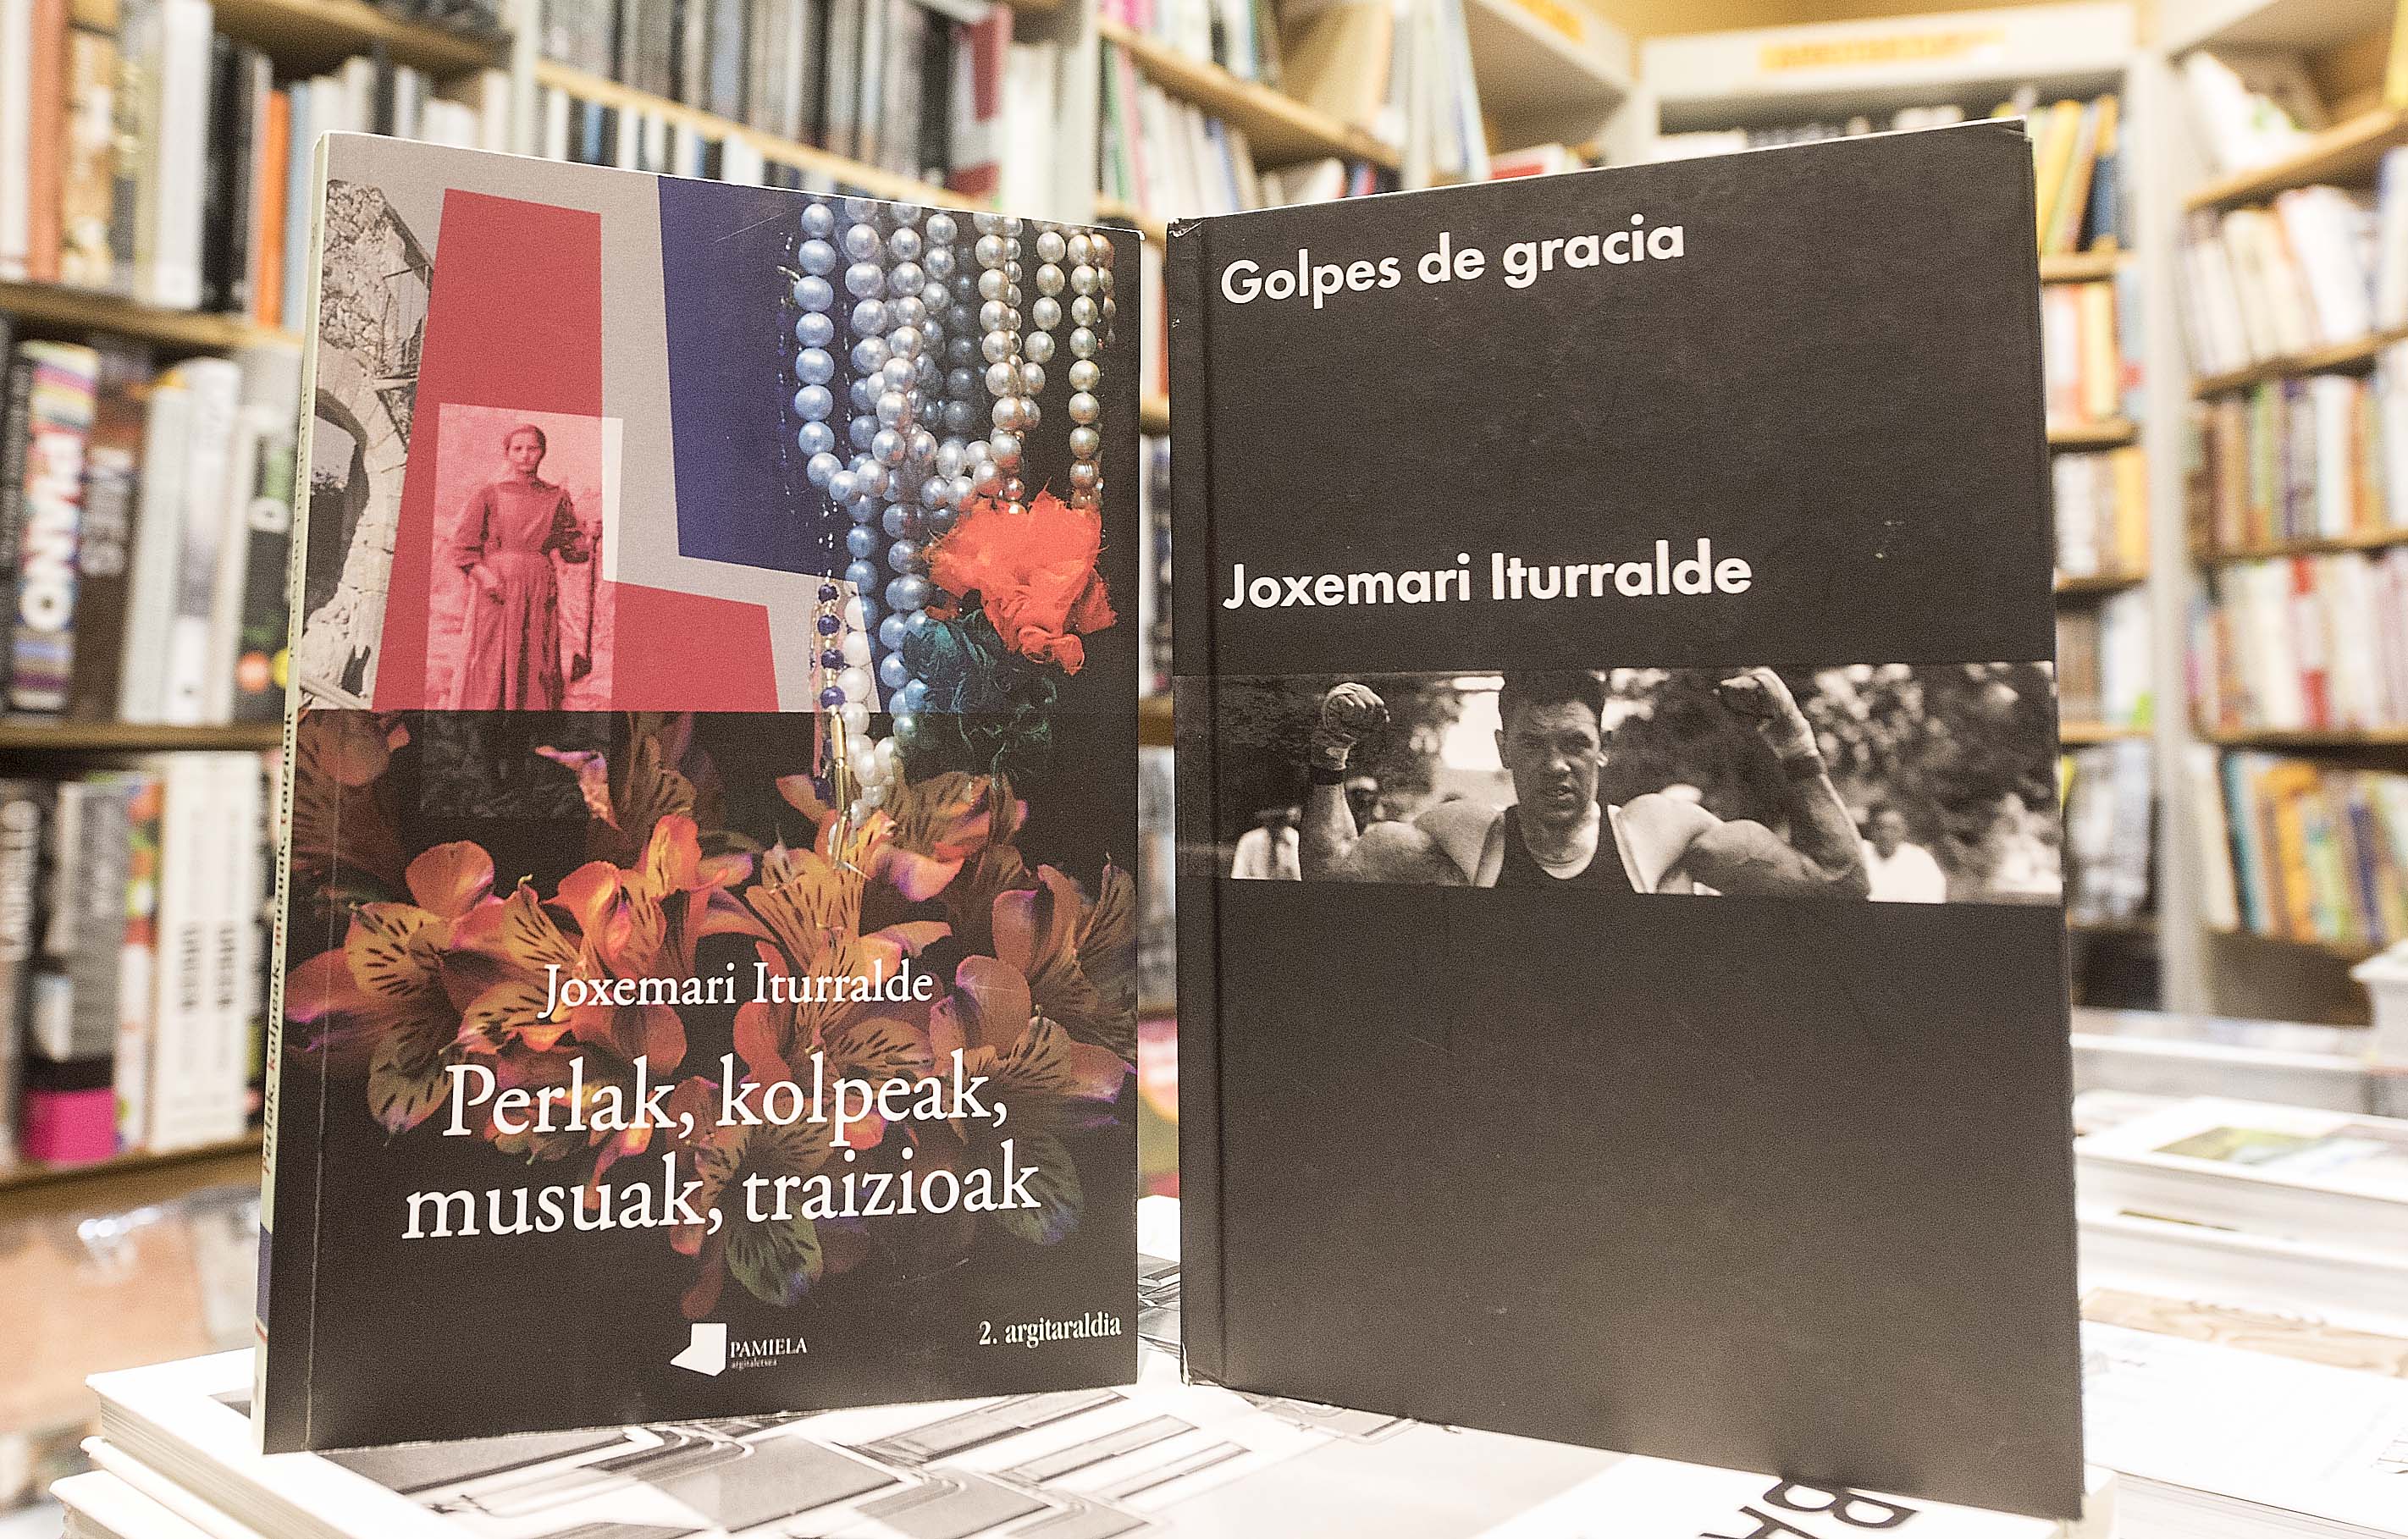 The novel by Iturralde and its Spanish translation. Ruben Plaza